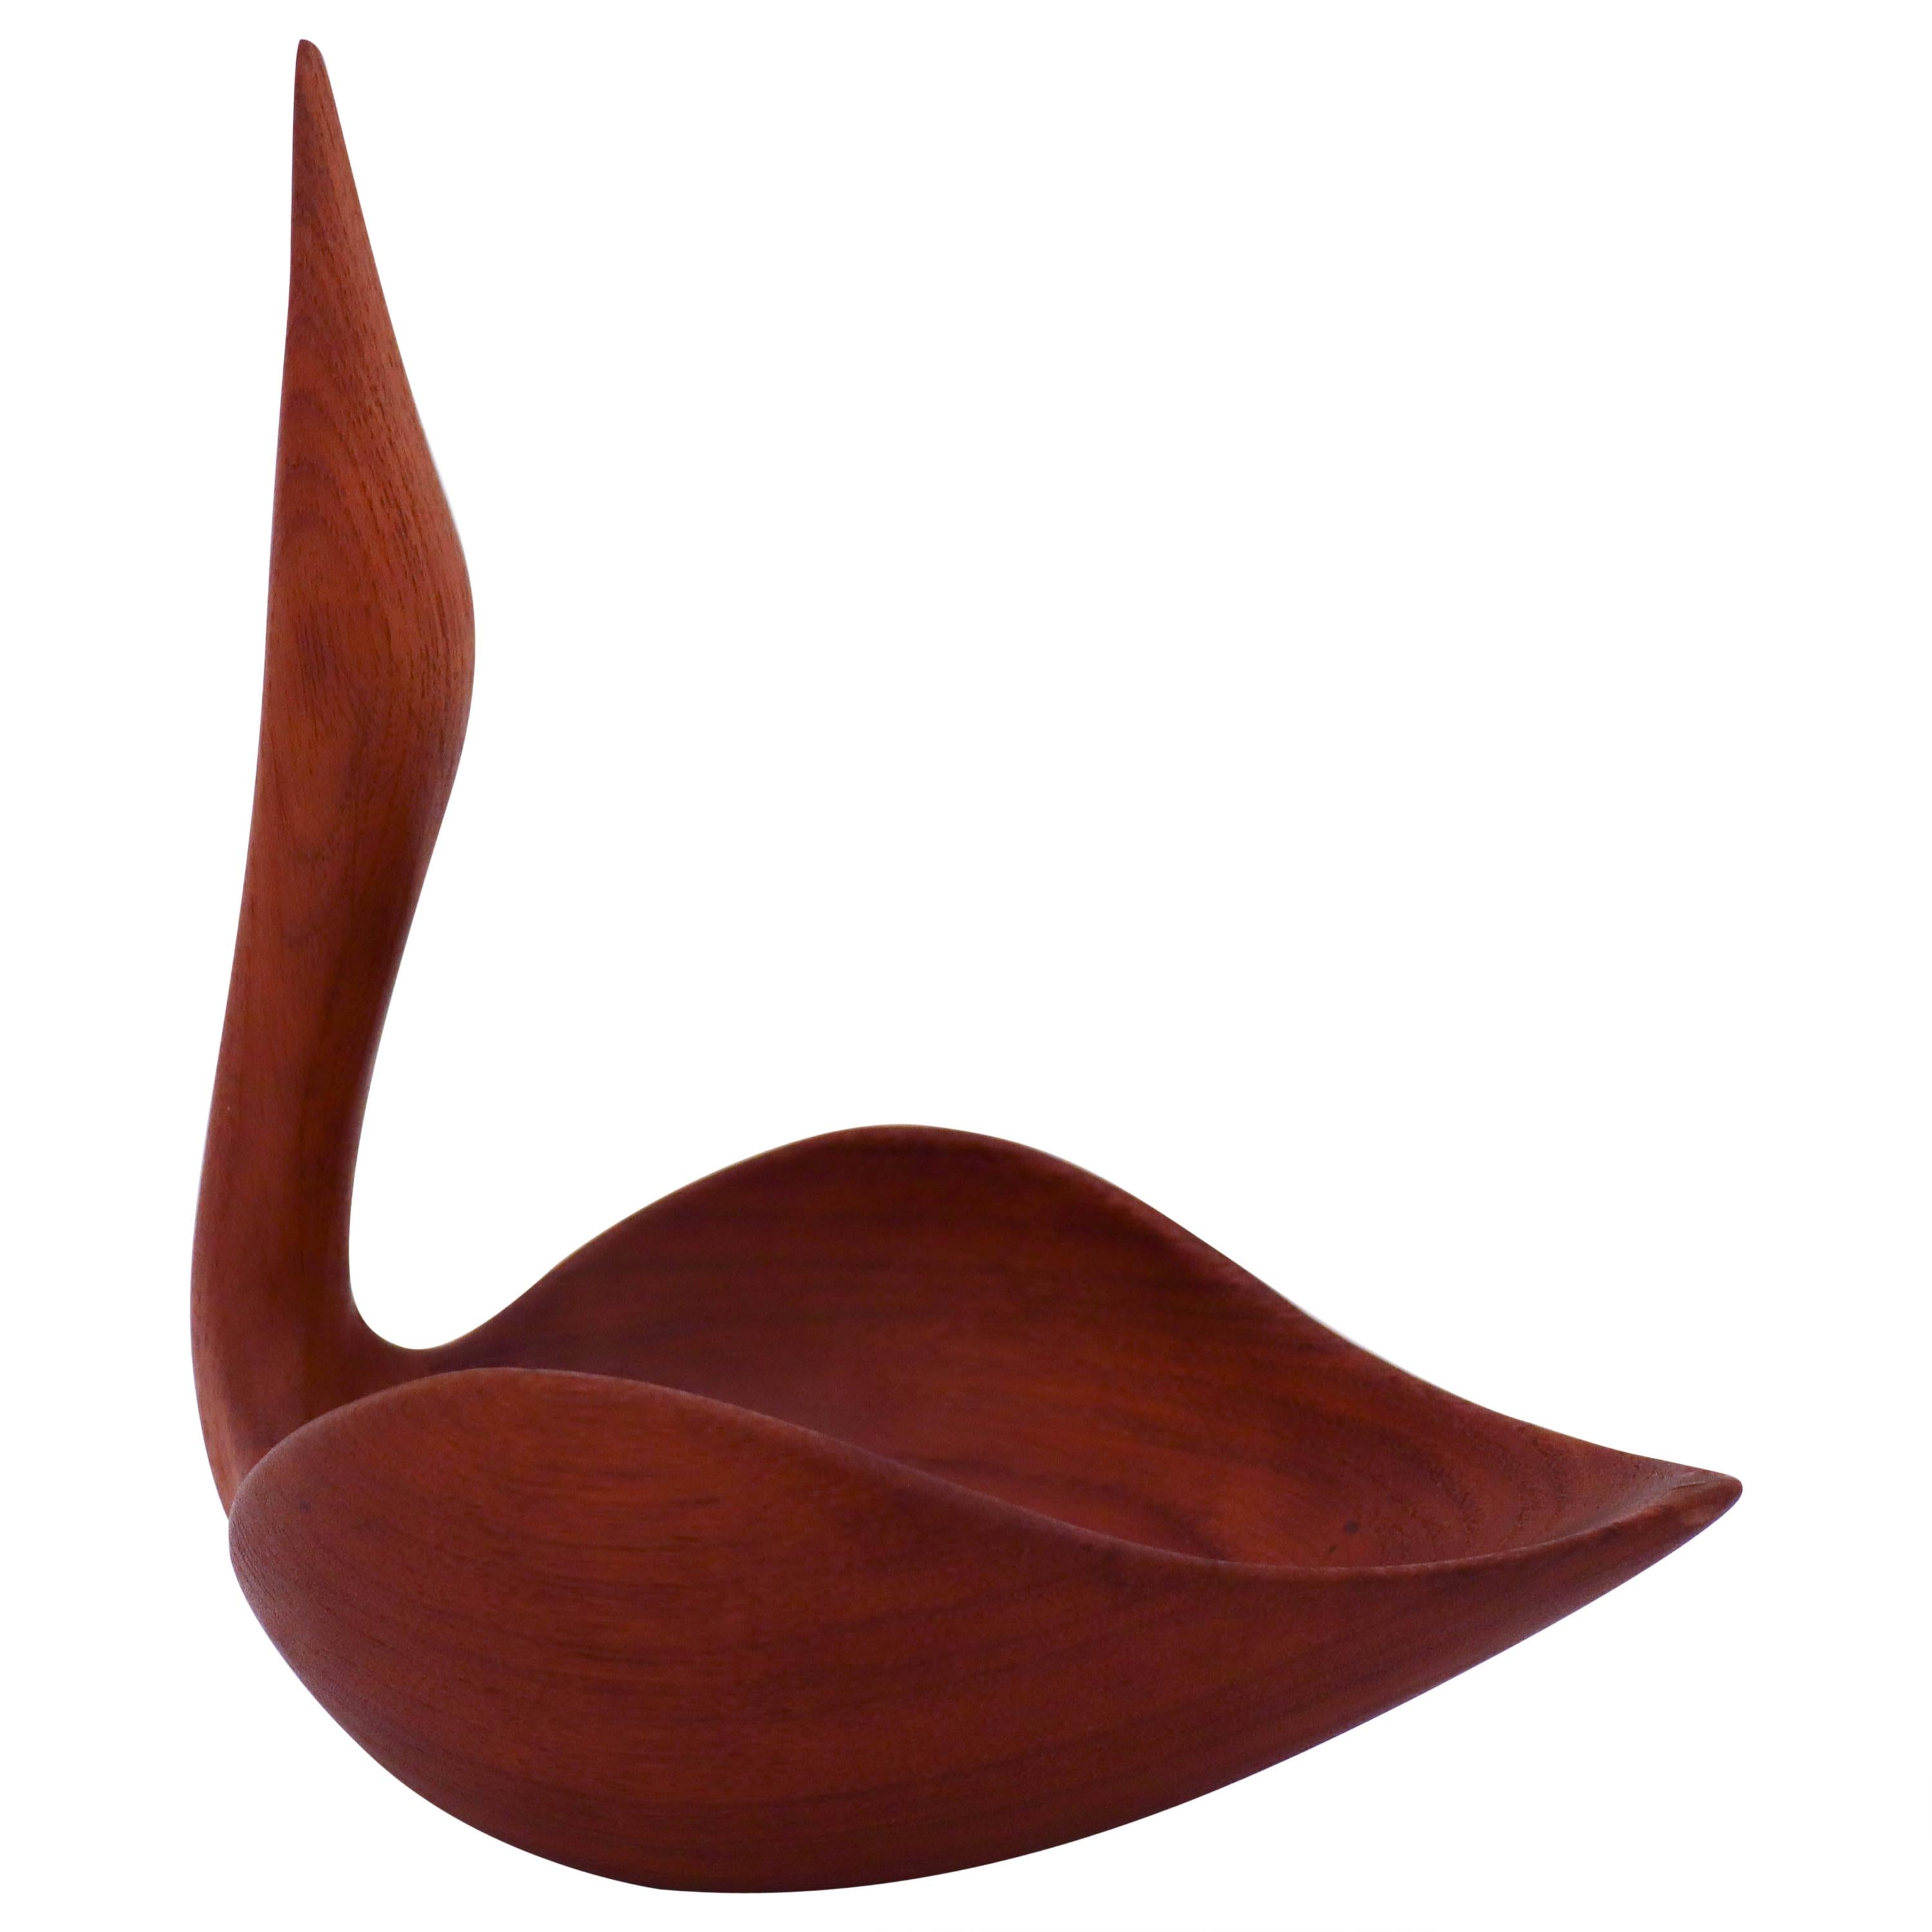 Johnny Mattsson, Wooden Sculpture / Bowl Bird Teak, Sweden